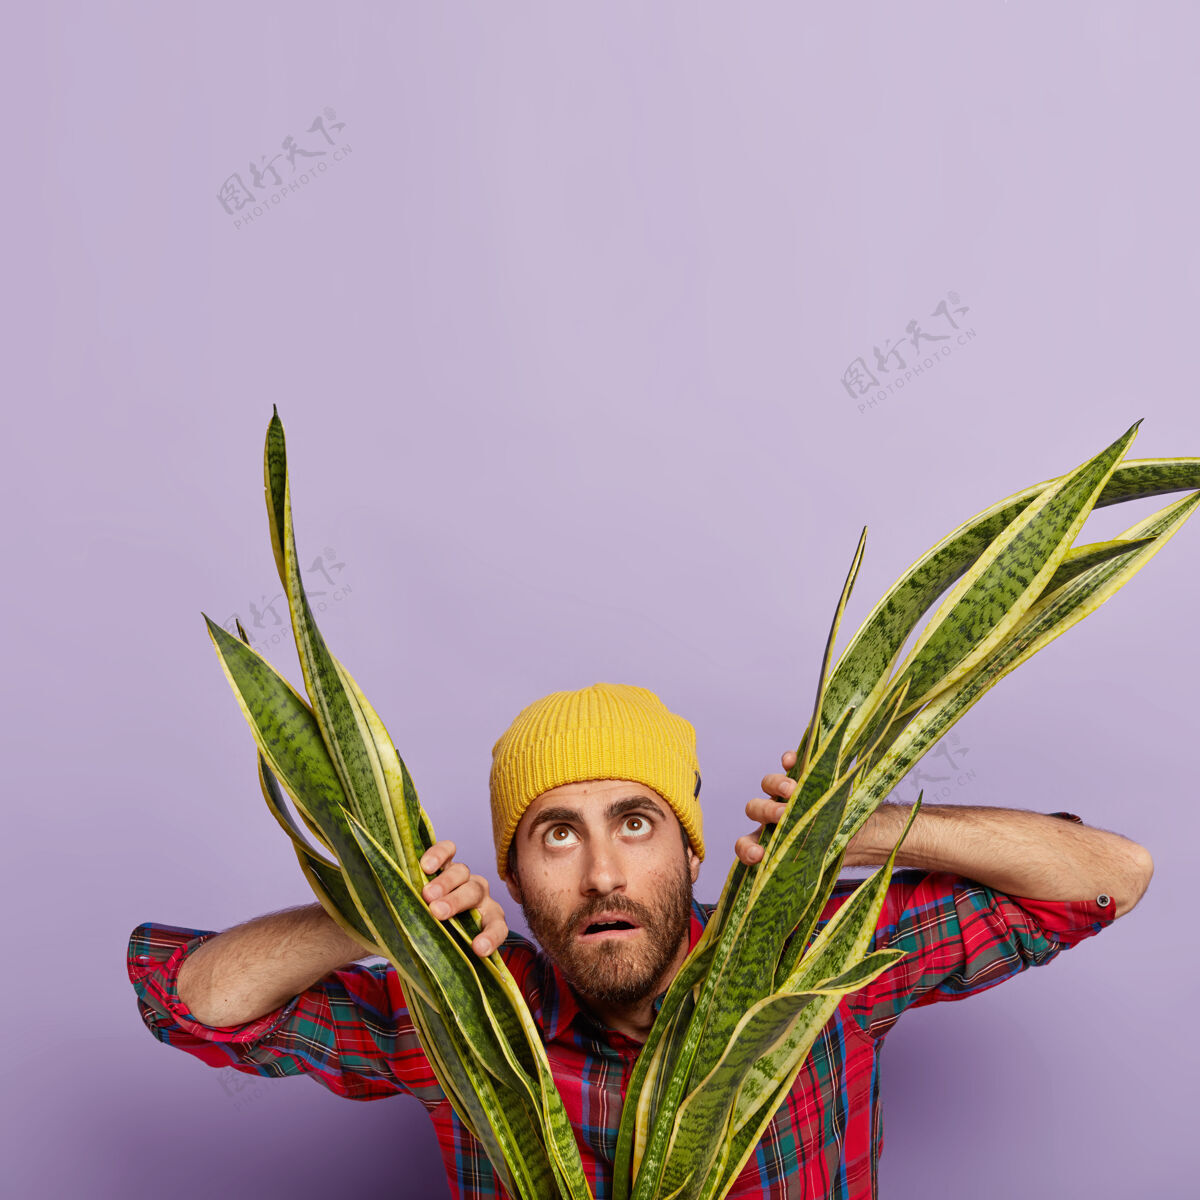 胡茬照片中 一个没有刮胡子的男人站在桑西韦利亚植物附近 抬头看去 戴着黄色帽子 穿着格子衬衫 关心着室内植物随意方格花纹情绪